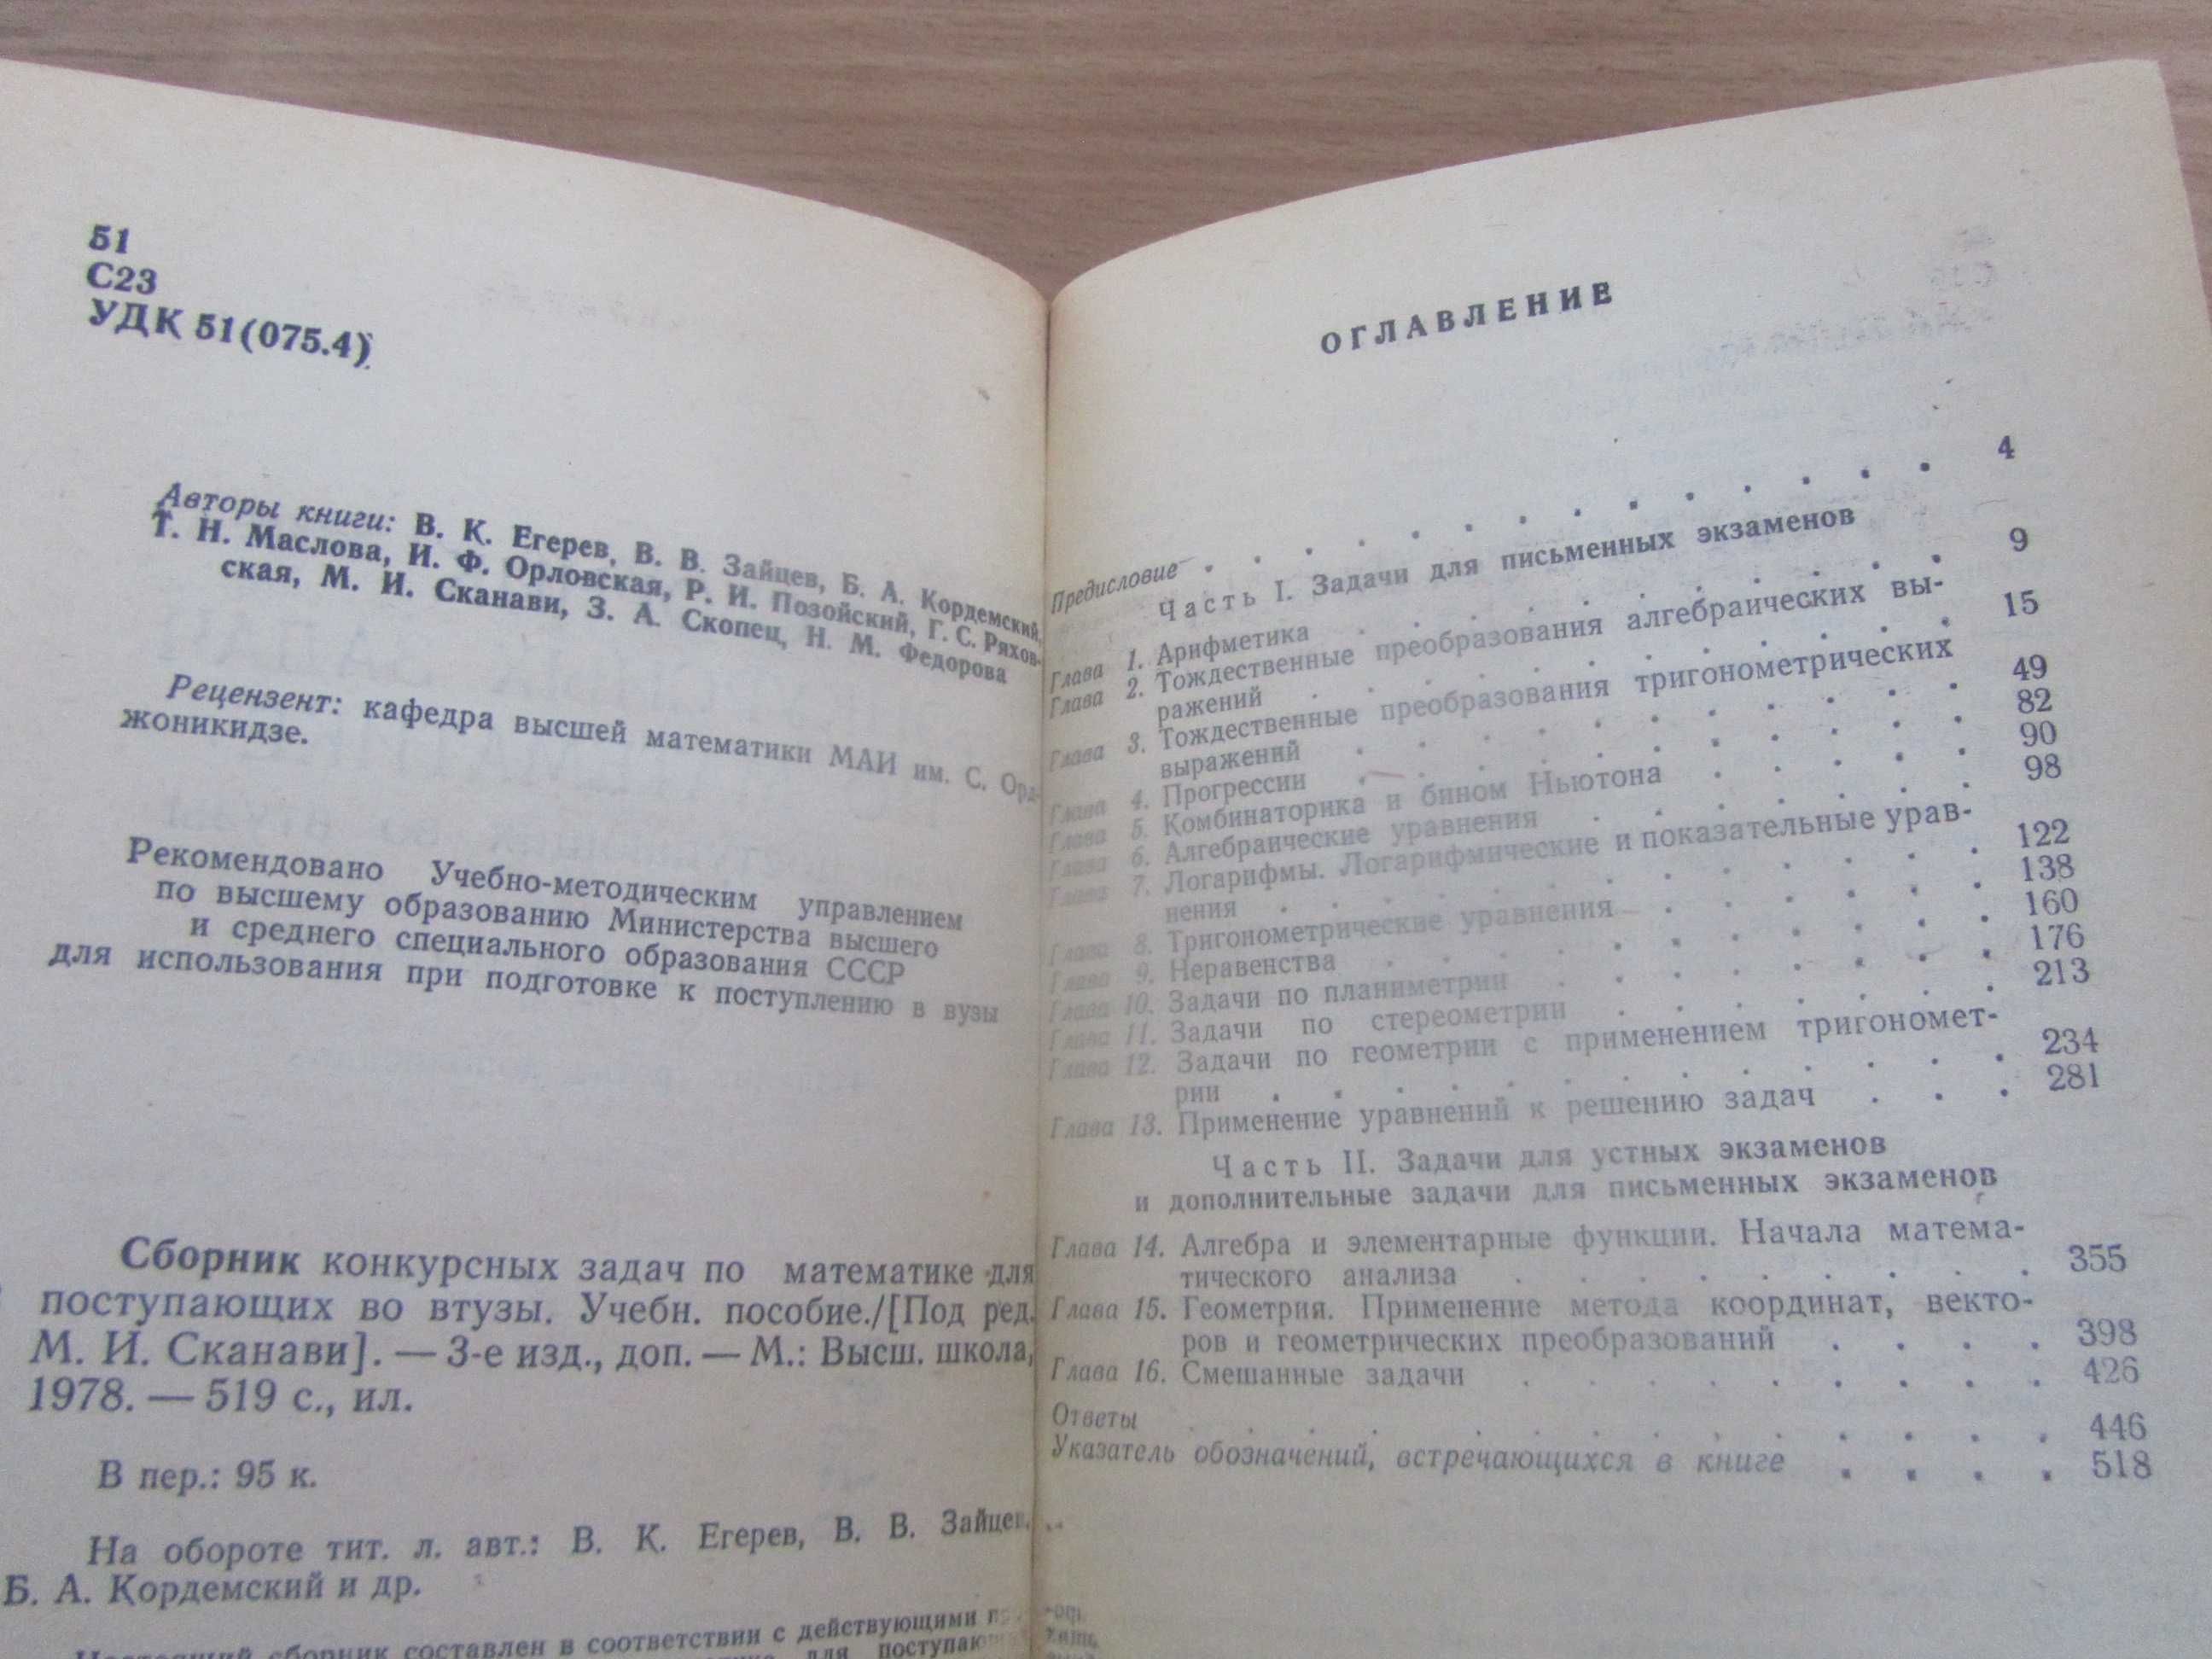 Физика+математика_Учебники и методички СССР